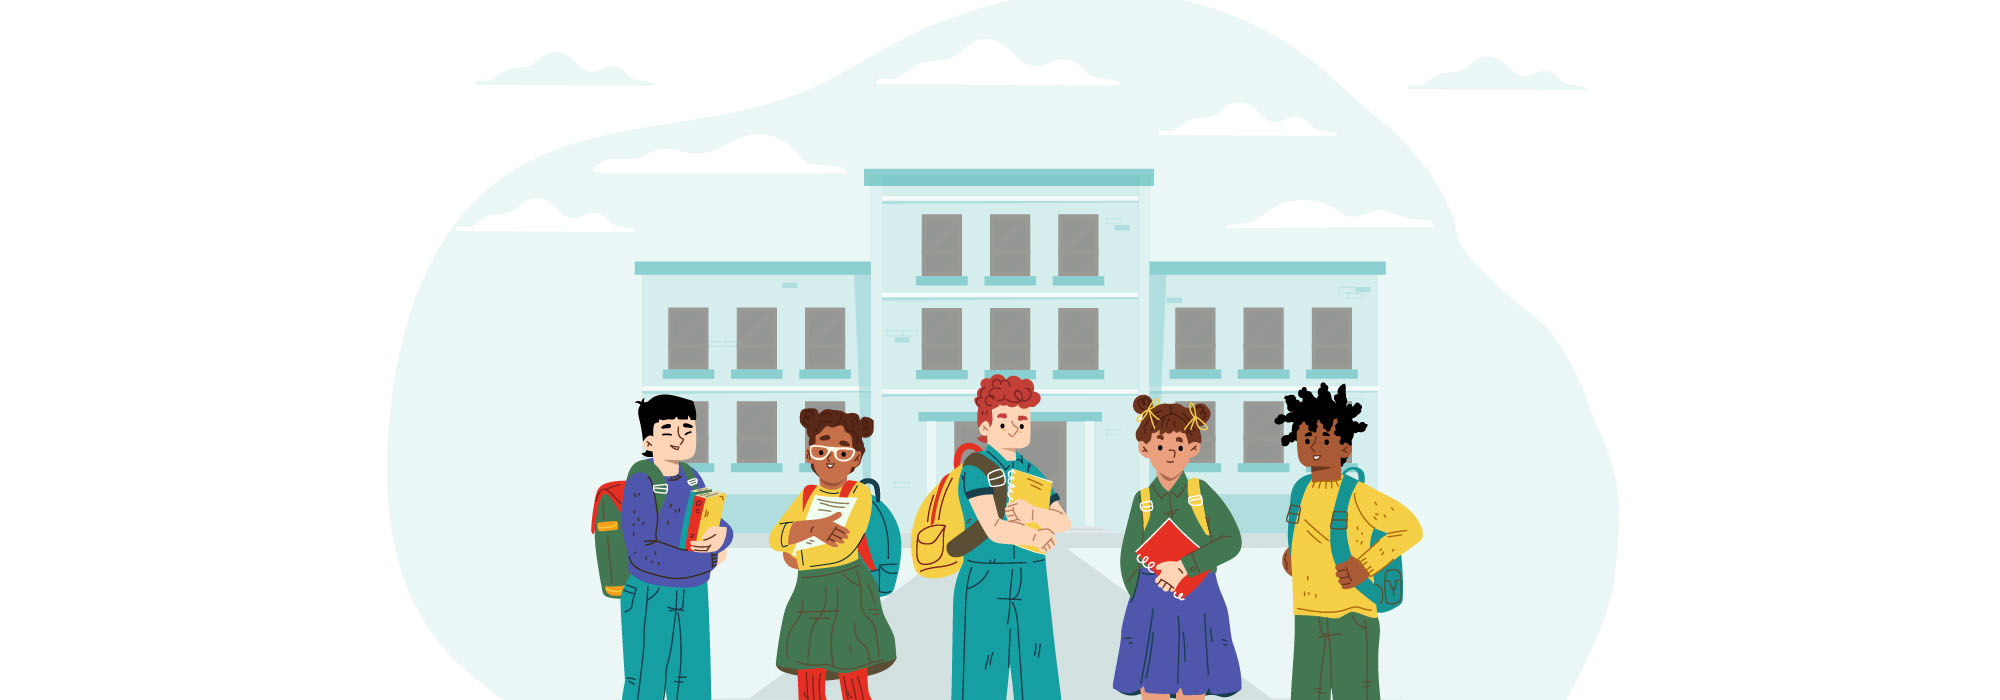 Illustration de cinq enfants de culture variés devant une école.